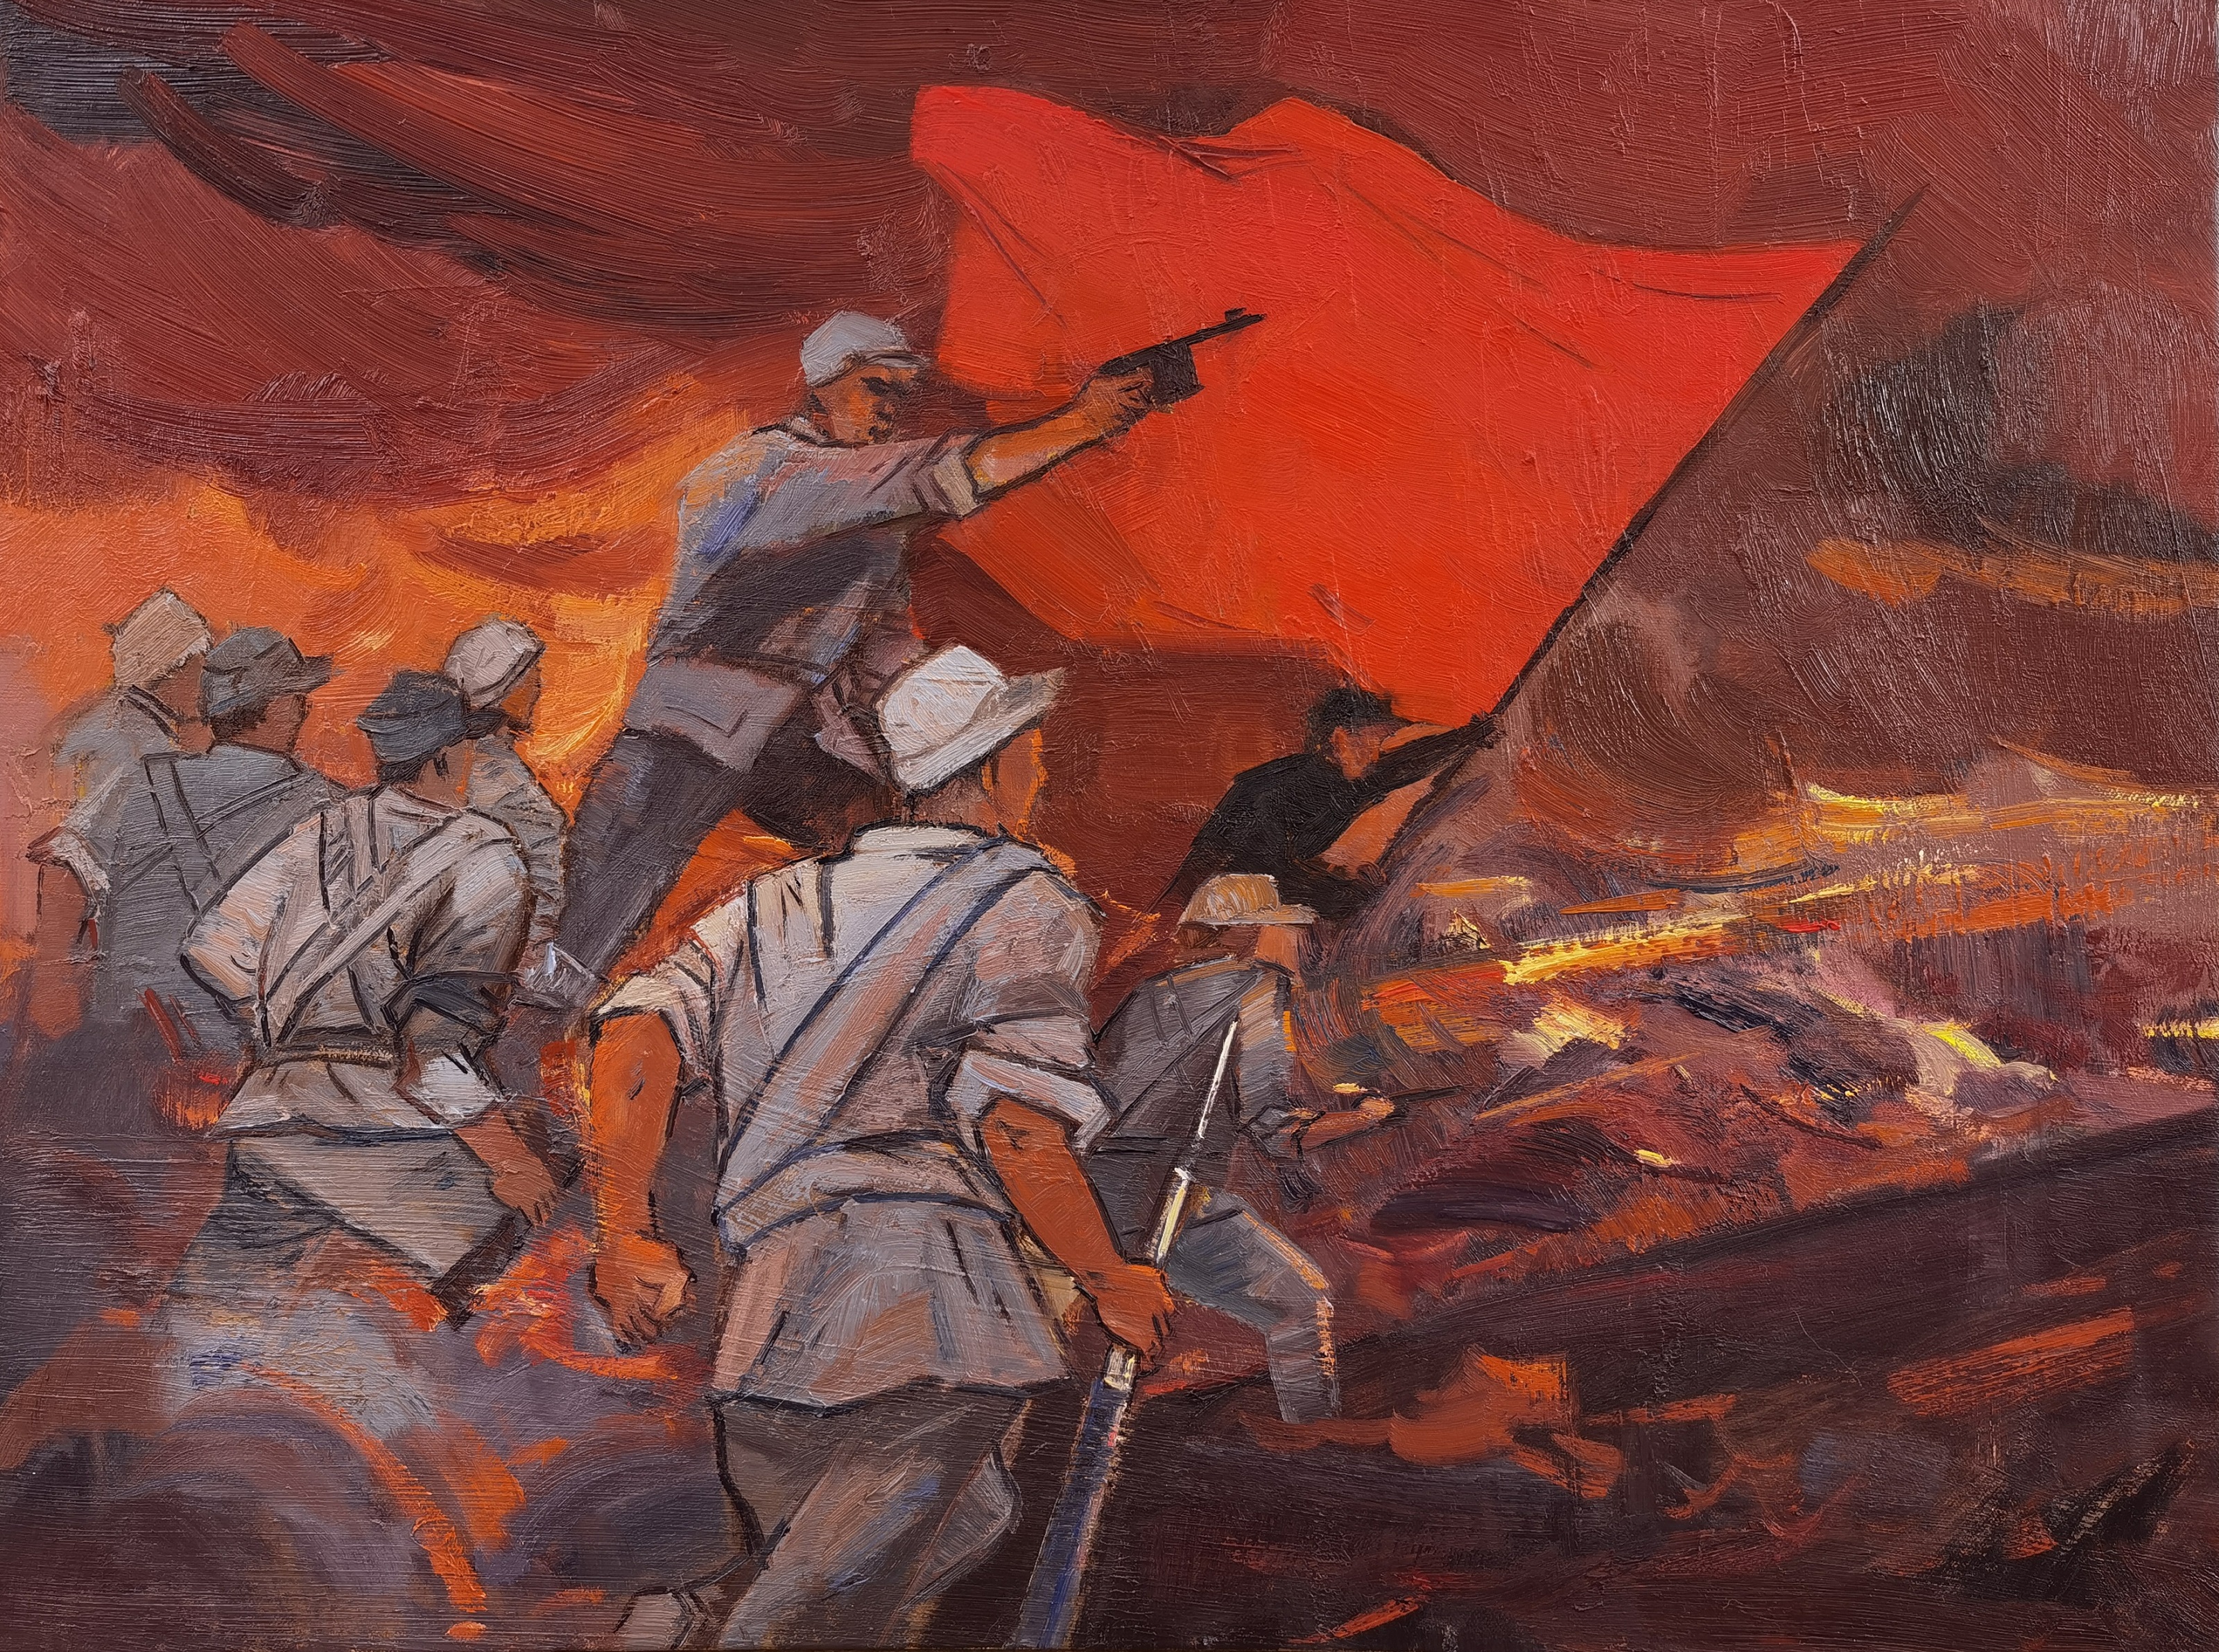 内蒙古建职院《红色大青山》系列绘画创作项目获批全区高校原创文化